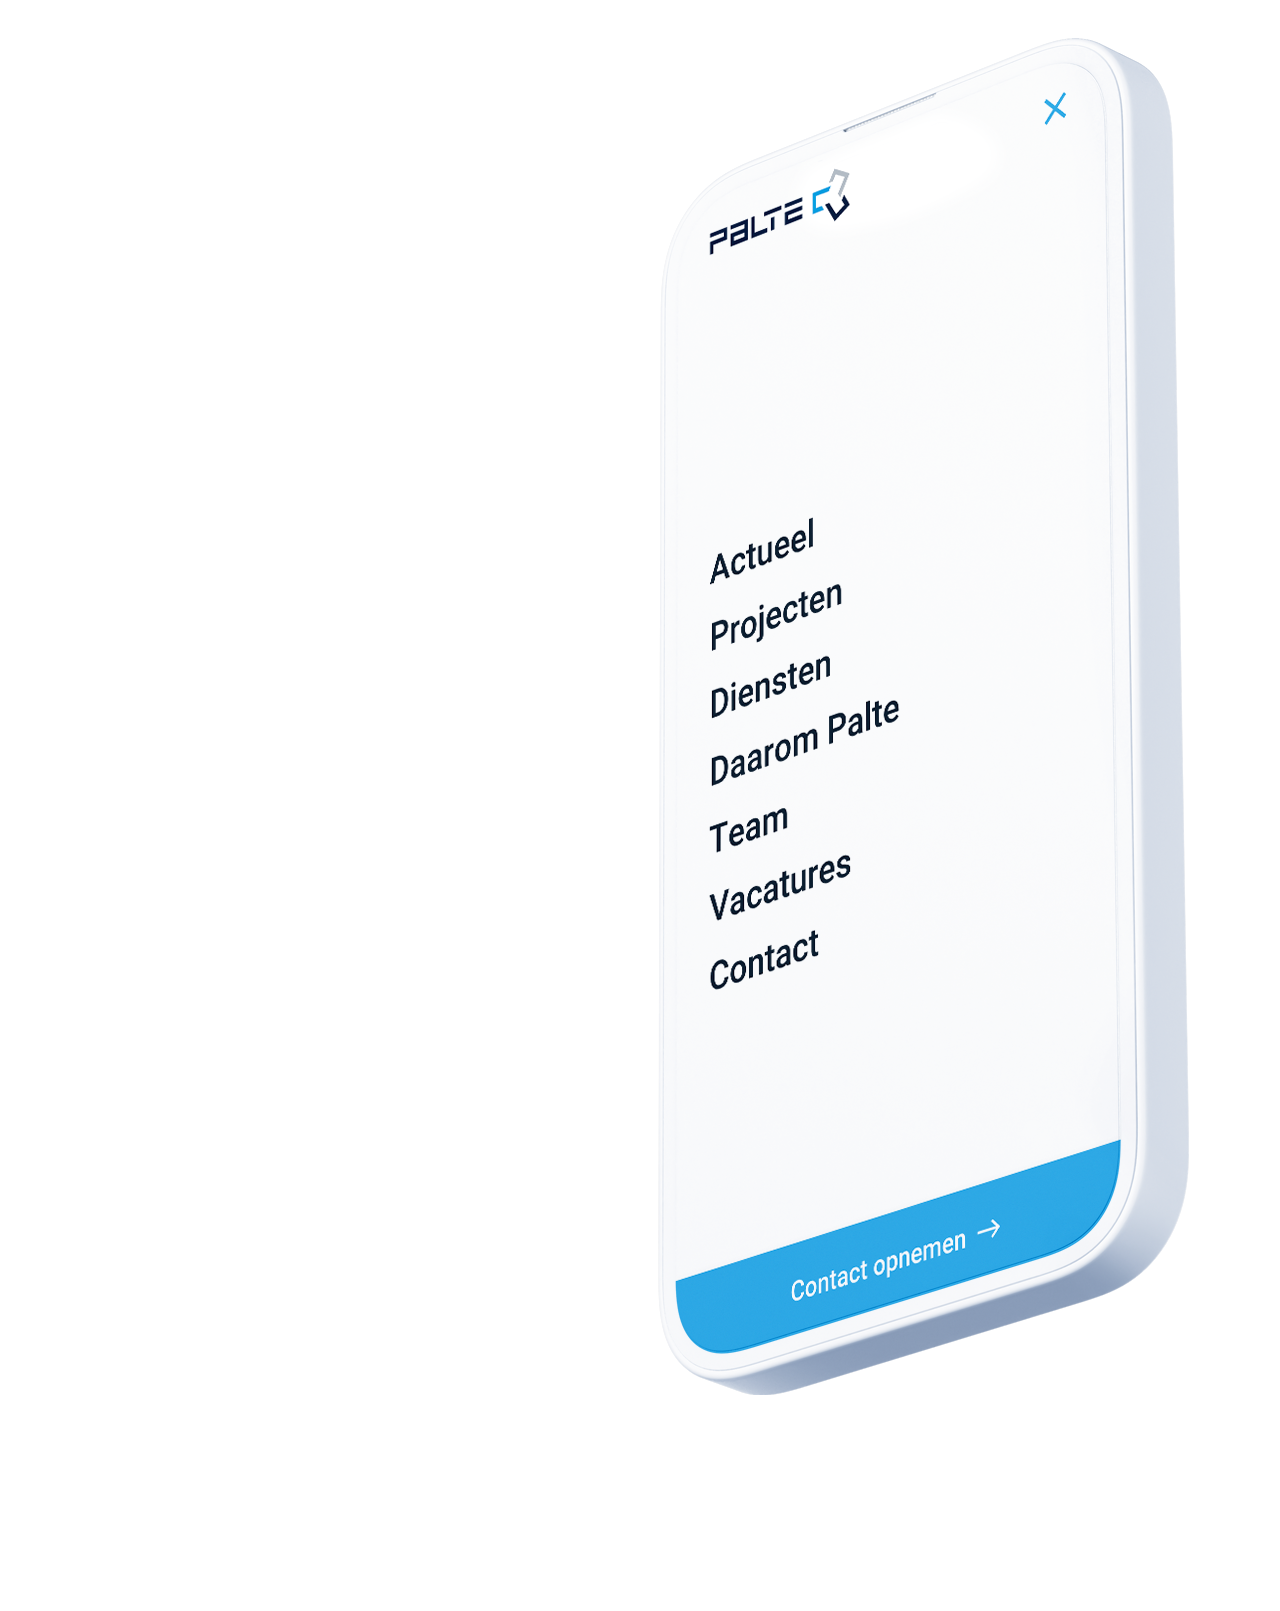 Een smartphonescherm met een menu in het Nederlands met opties als Actueel, Projecten, Diensten en andere, waarbij de premium financiële diensten van Palte B.V. in Nederland worden benadrukt.